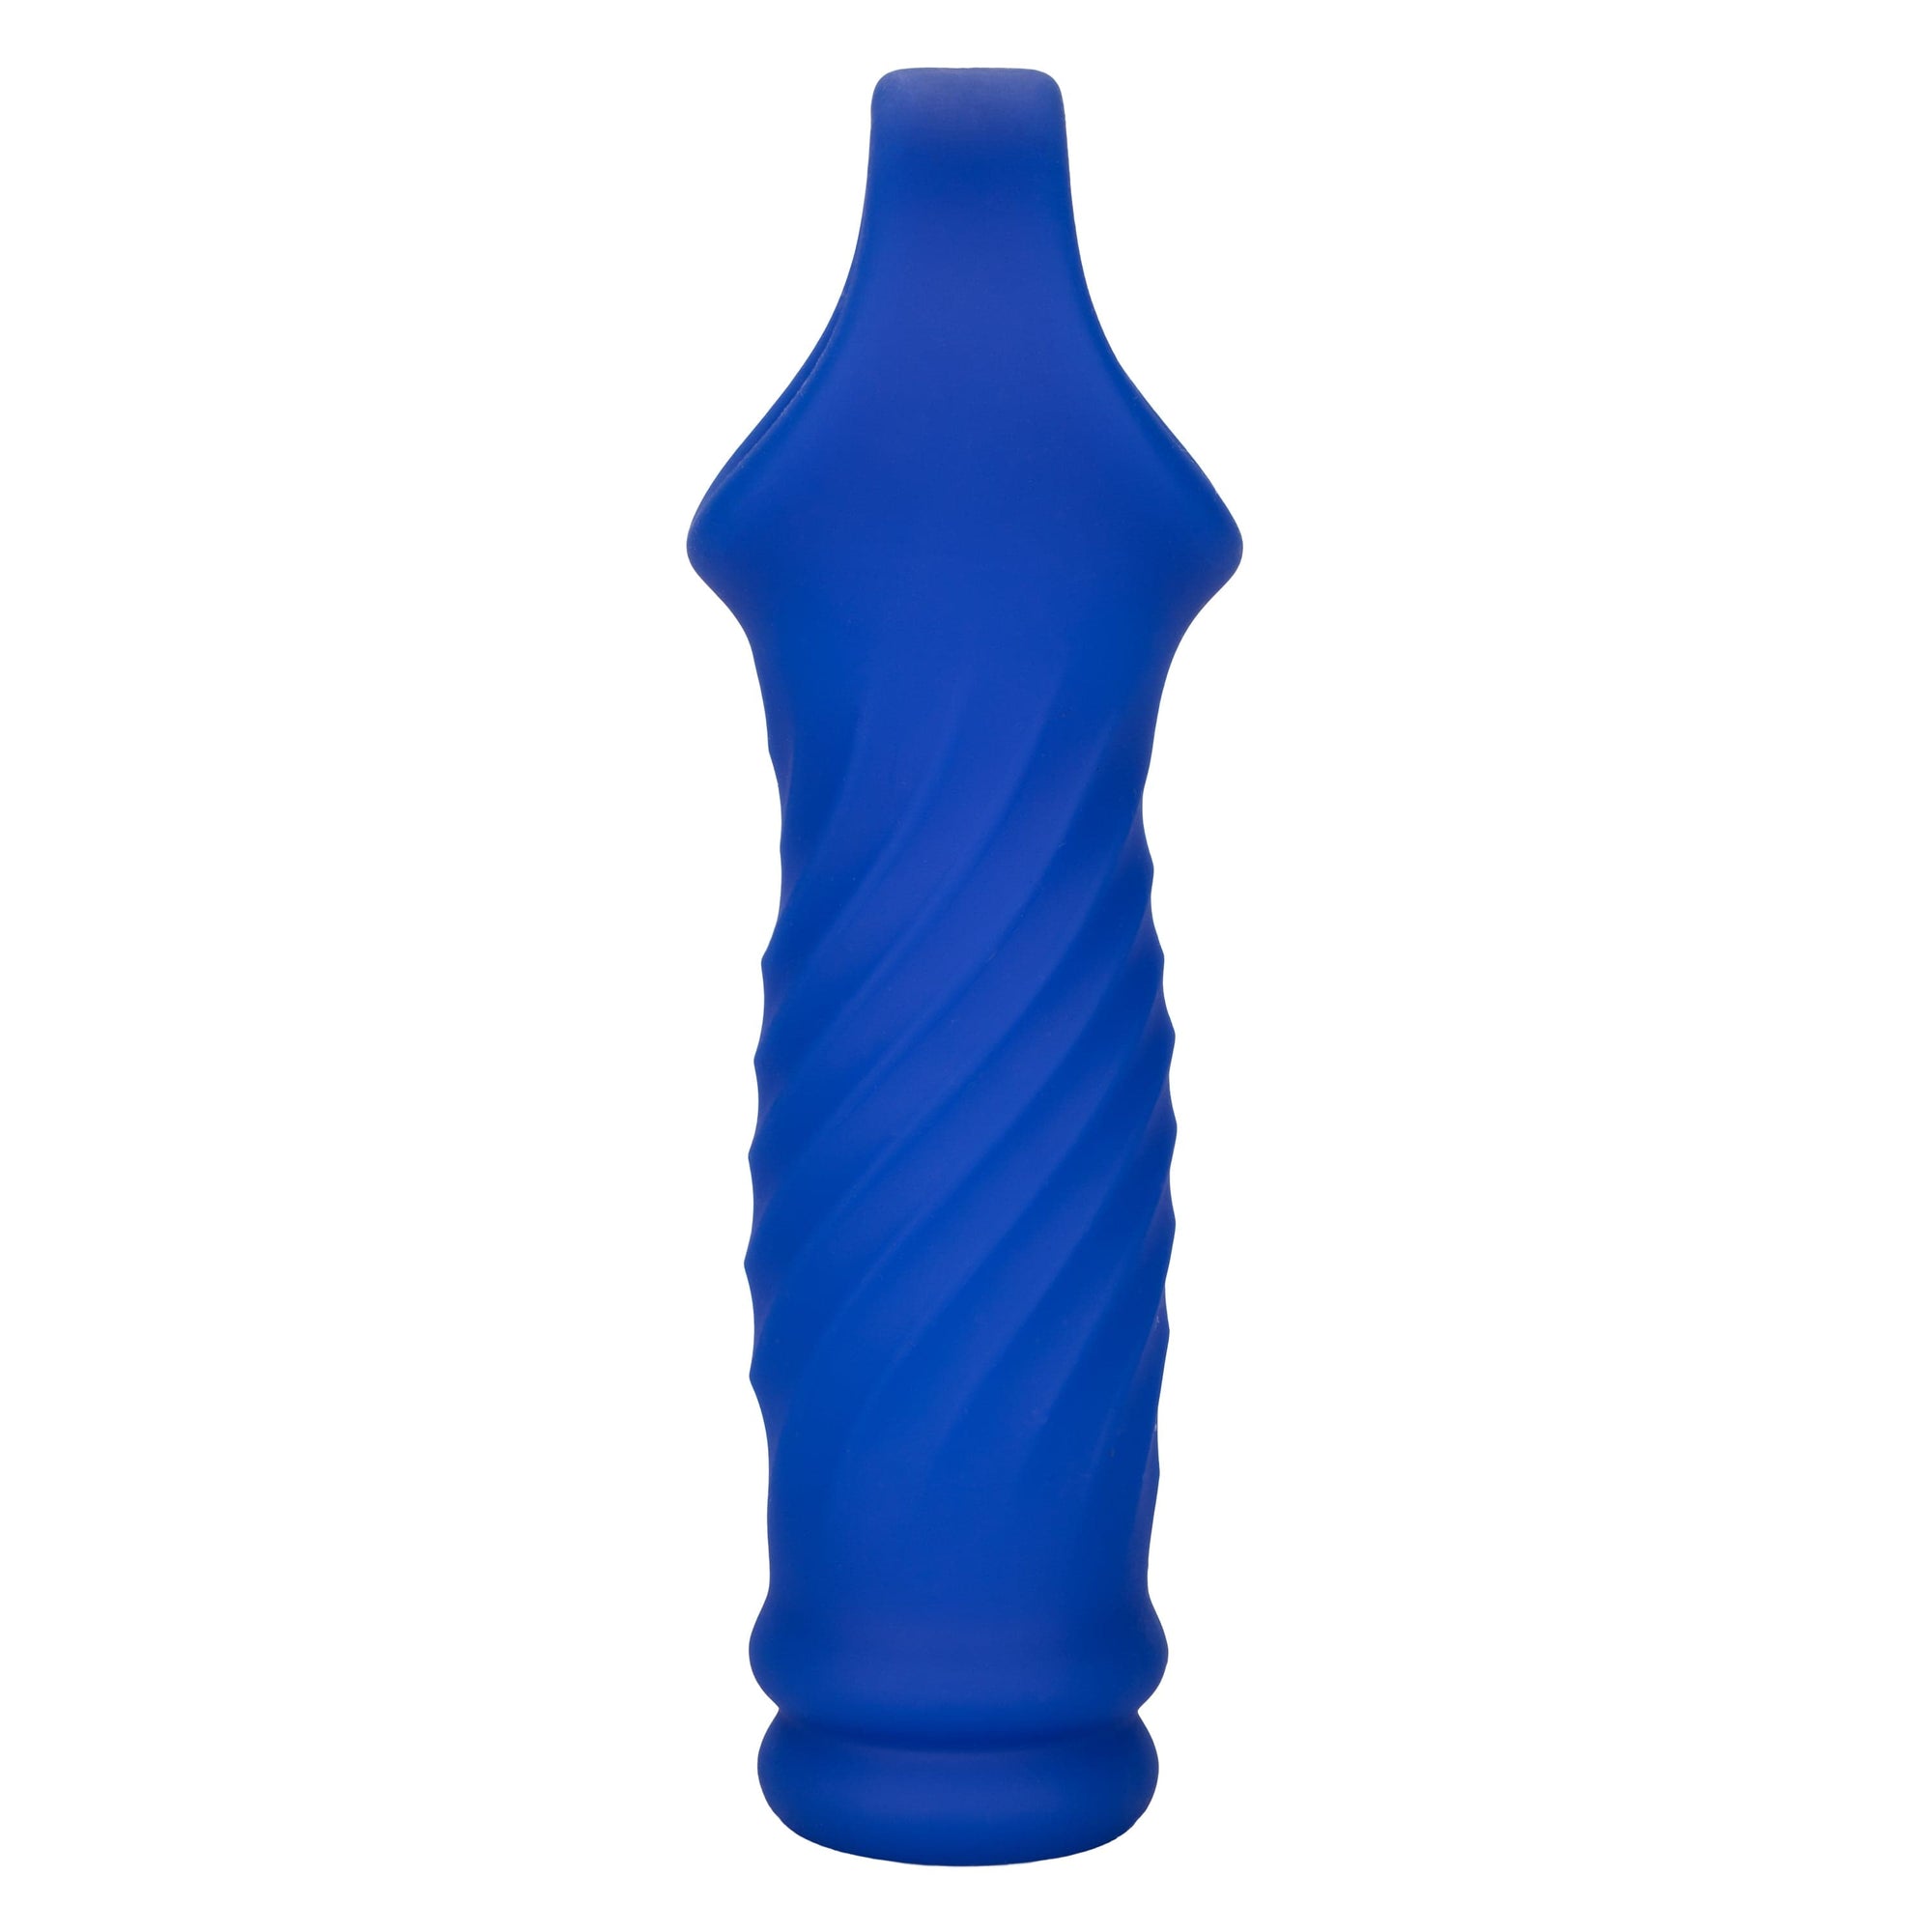 California Exotics - Admiral Liquid Silicone Wave Extension Cock Sleeve (Blue) -  Cock Sleeves (Non Vibration)  Durio.sg